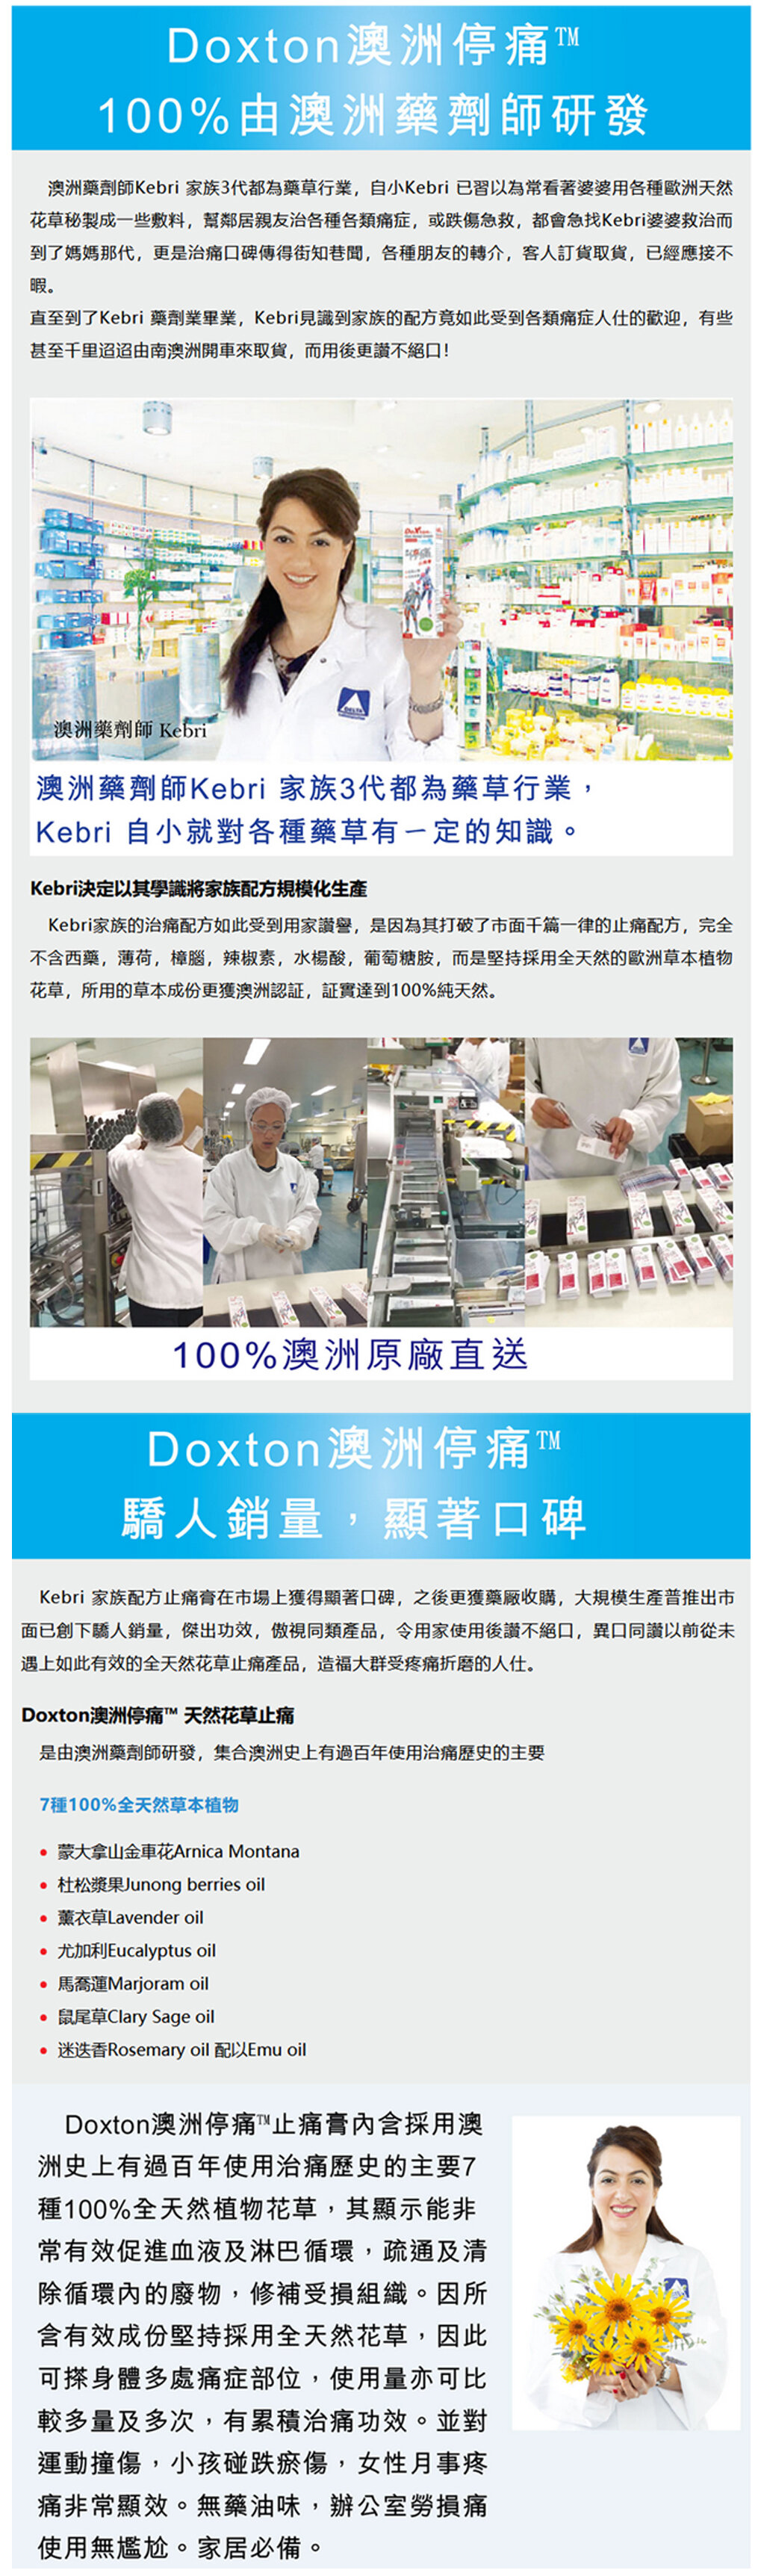 停痛| 天然止痛膏(此日期前最佳:2027年01月) | Hktvmall 香港最大網購平台